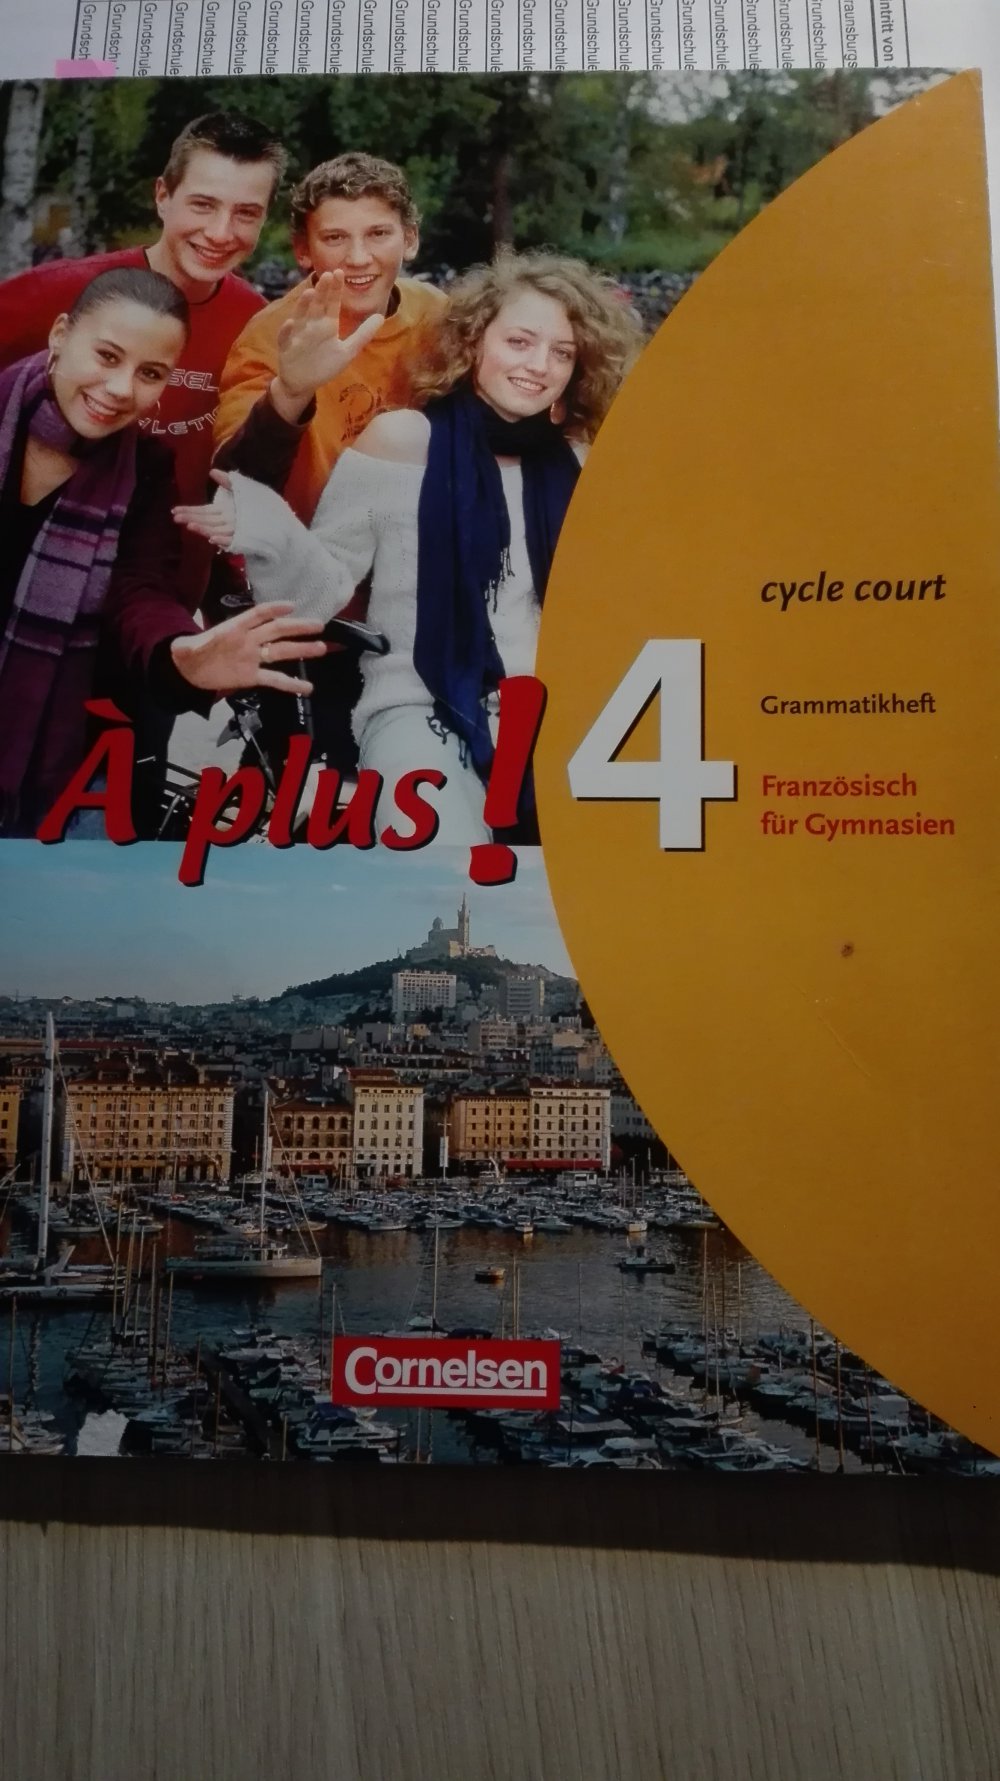 A plus 4 - Cycle court Grammatikheft für Gymnasien